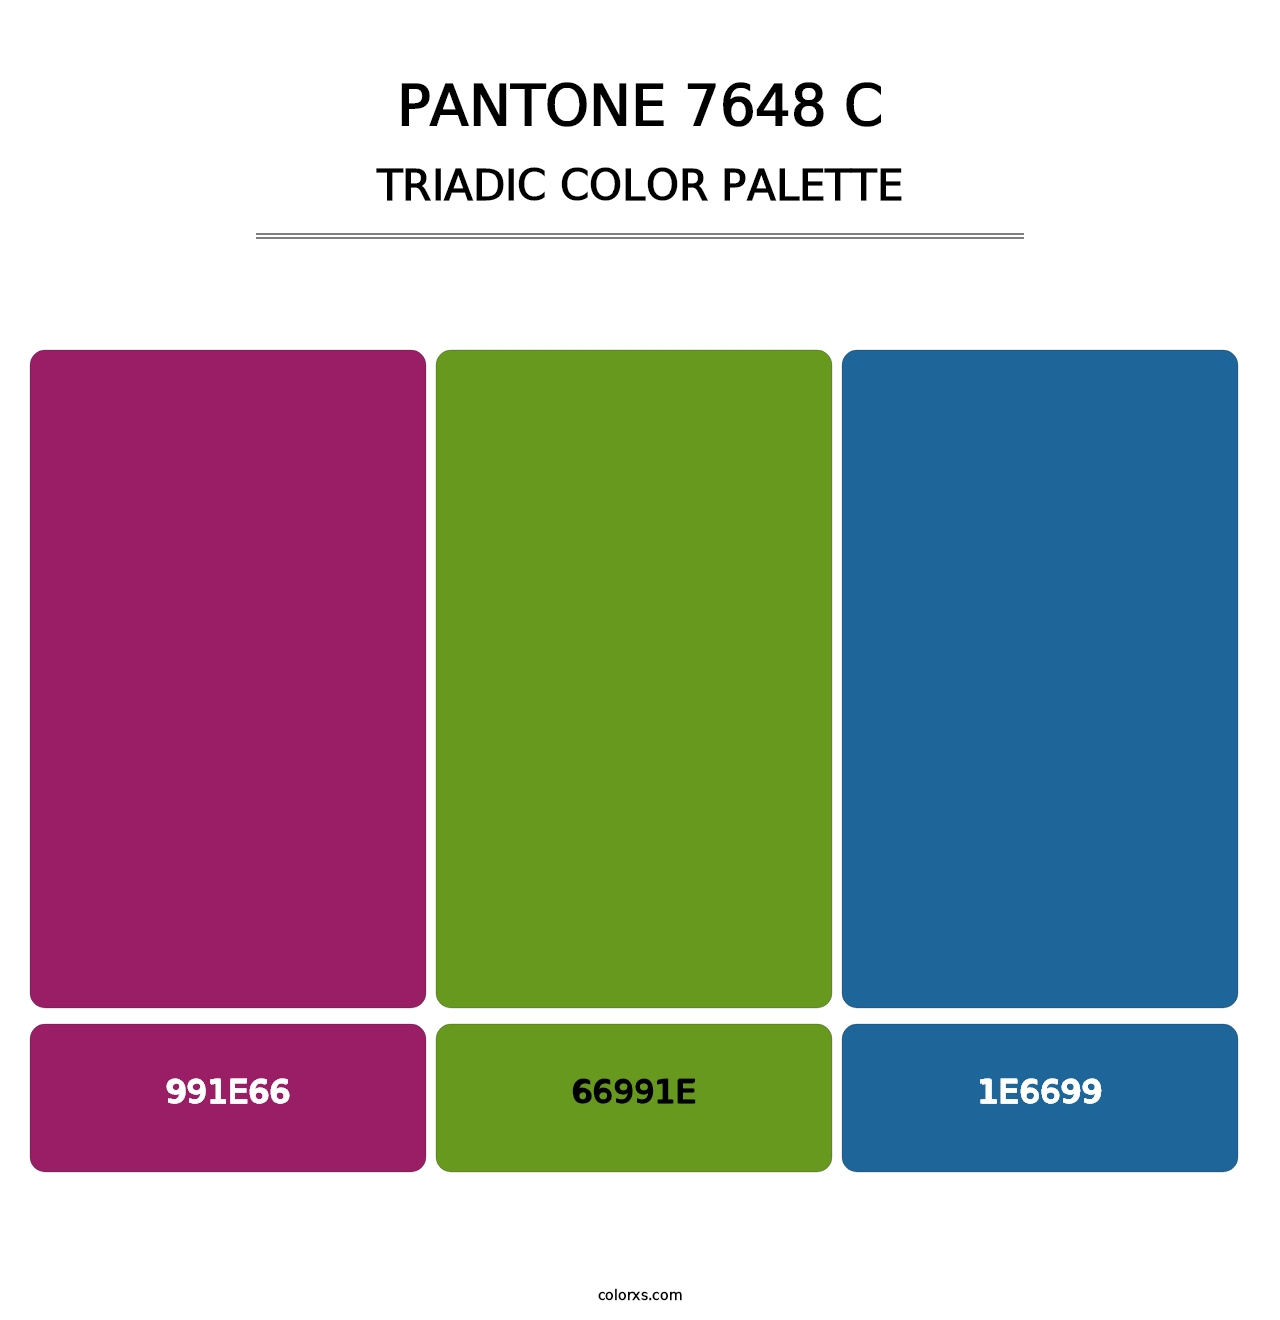 PANTONE 7648 C - Triadic Color Palette